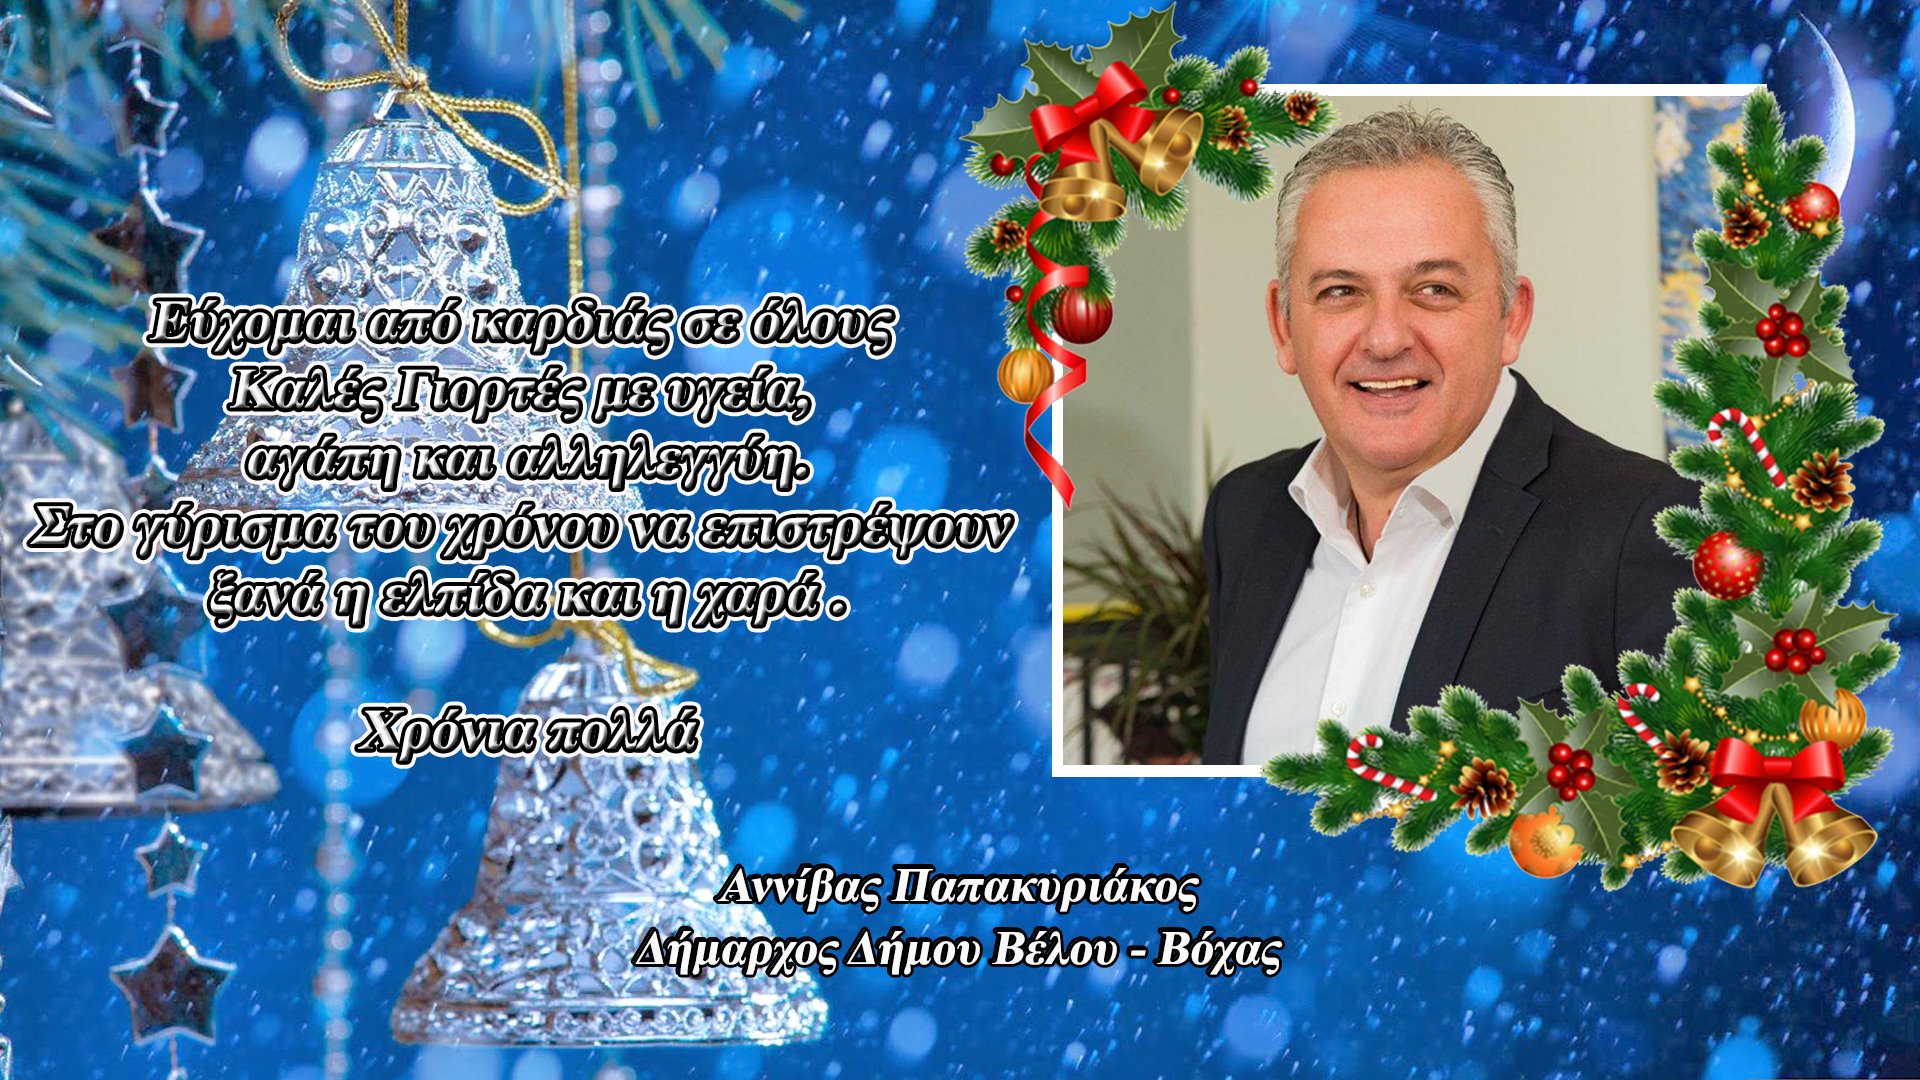 Ο Δήμαρχος Δήμου Βέλου-Βόχας Αννίβας Παπακυριάκος μας εύχεται καλές γιορτές με υγεία - ΠΟΛΙΤΙΚΗ